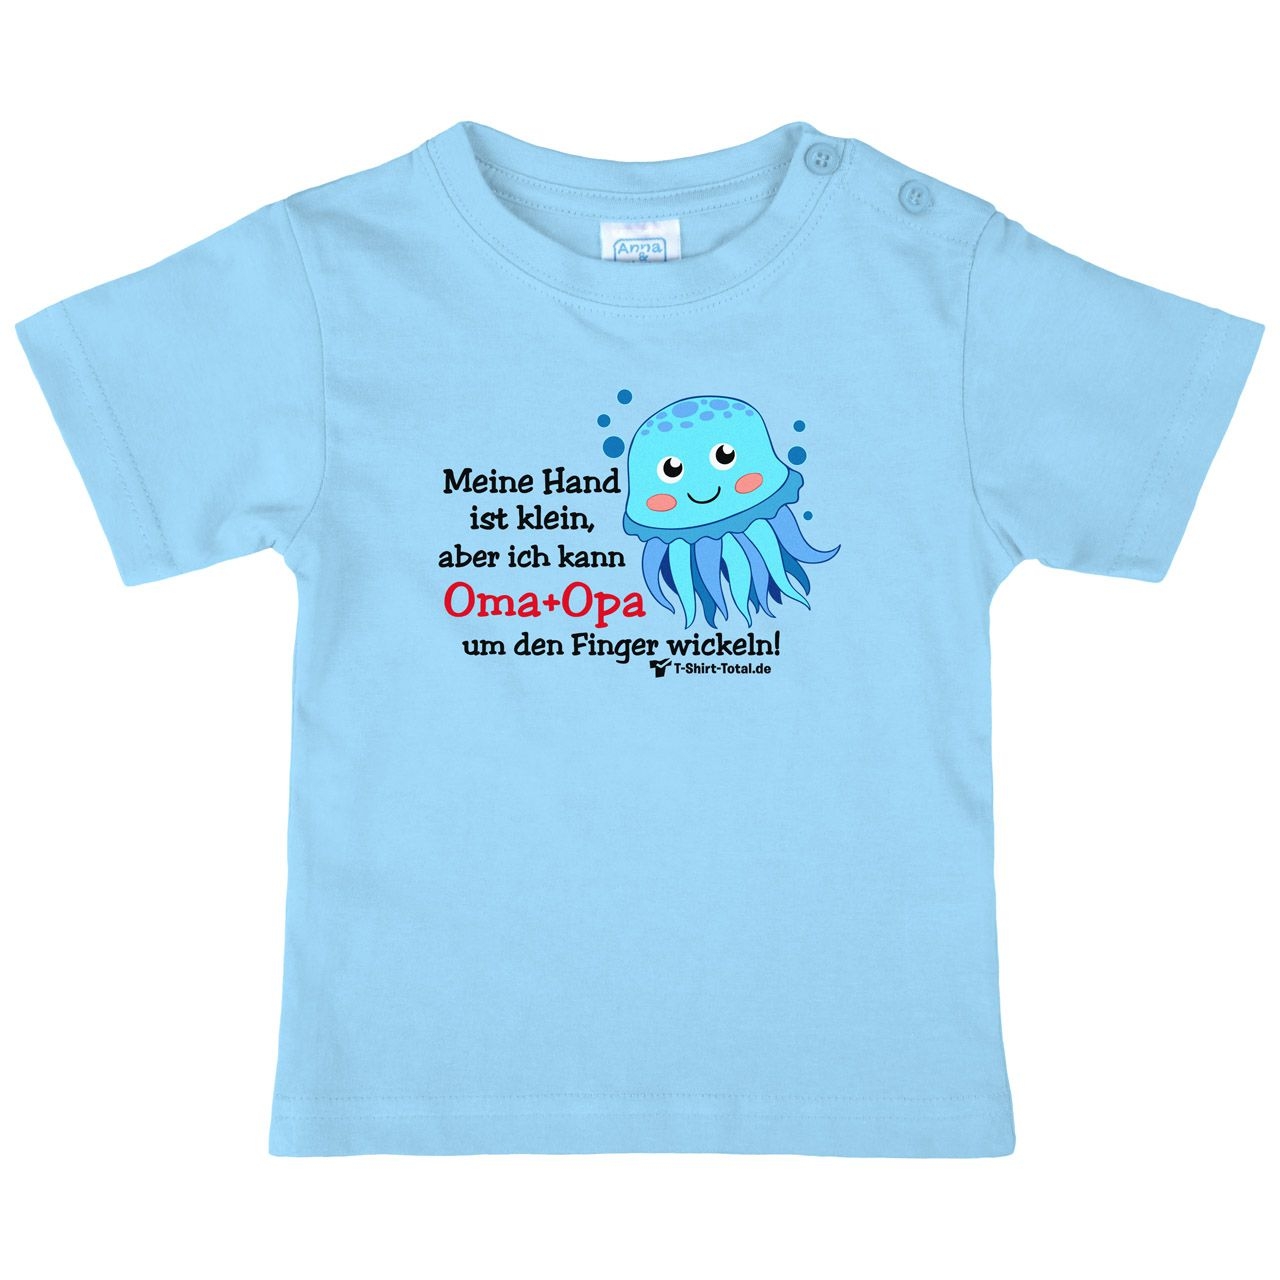 Kleine Hand Oma Opa Octopus Kinder T-Shirt hellblau 68 / 74